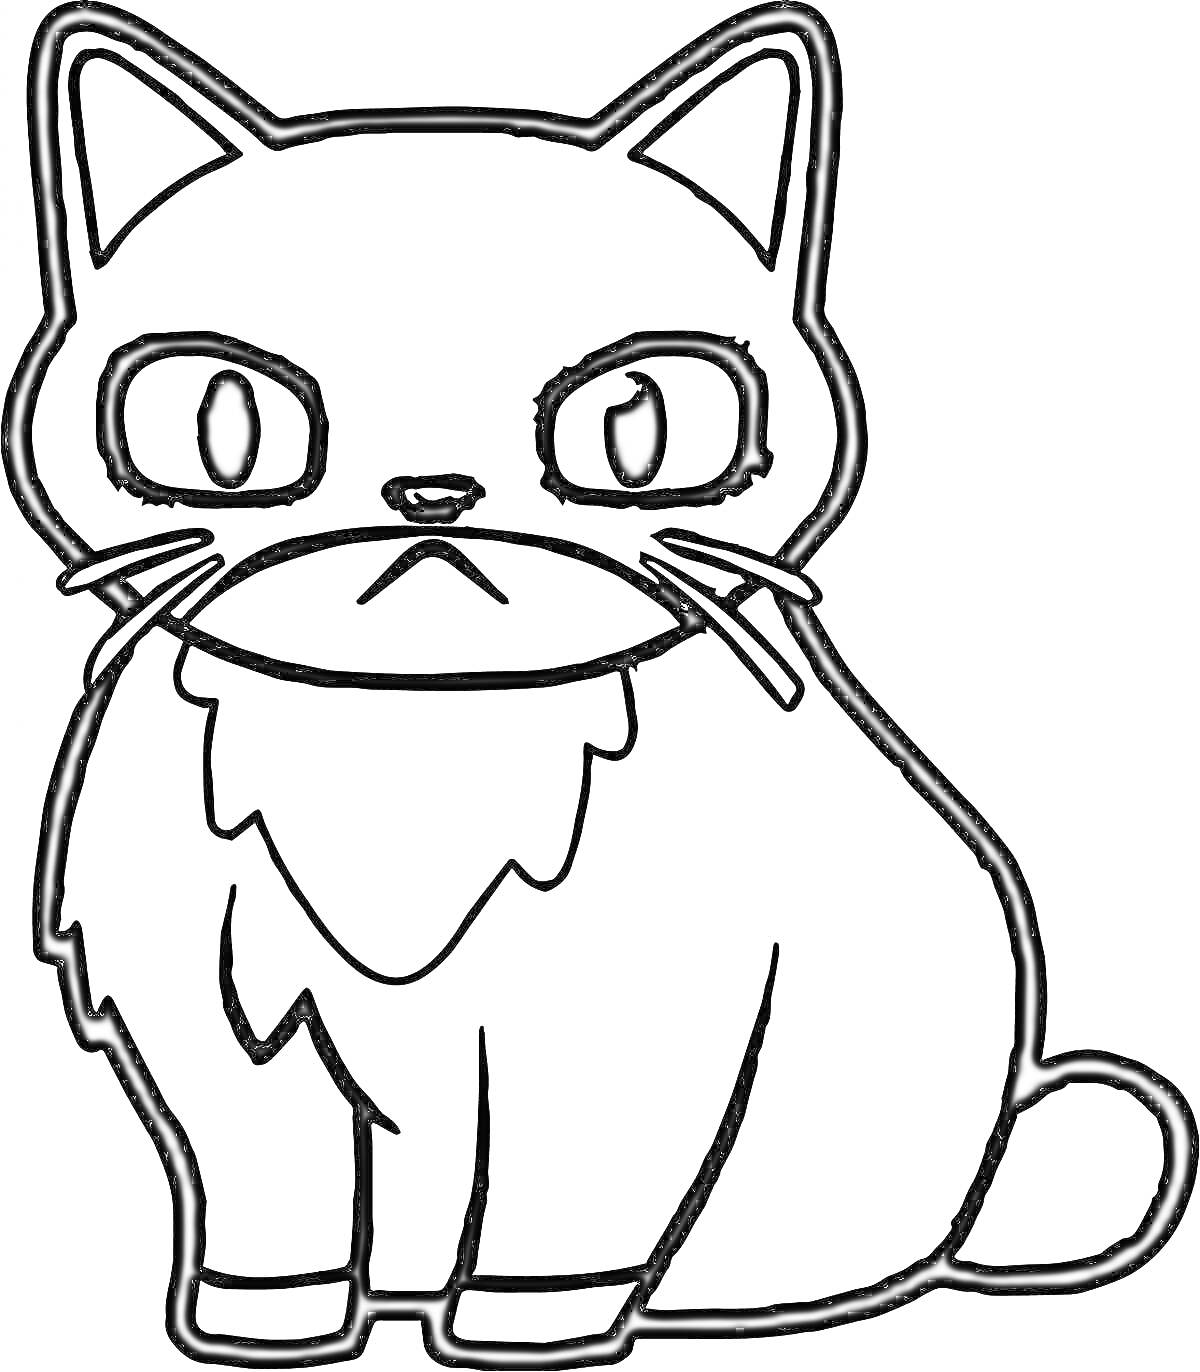 Раскраска мультяшный кот с большими глазами, пушистыми щеками и хвостом, сидящий прямо